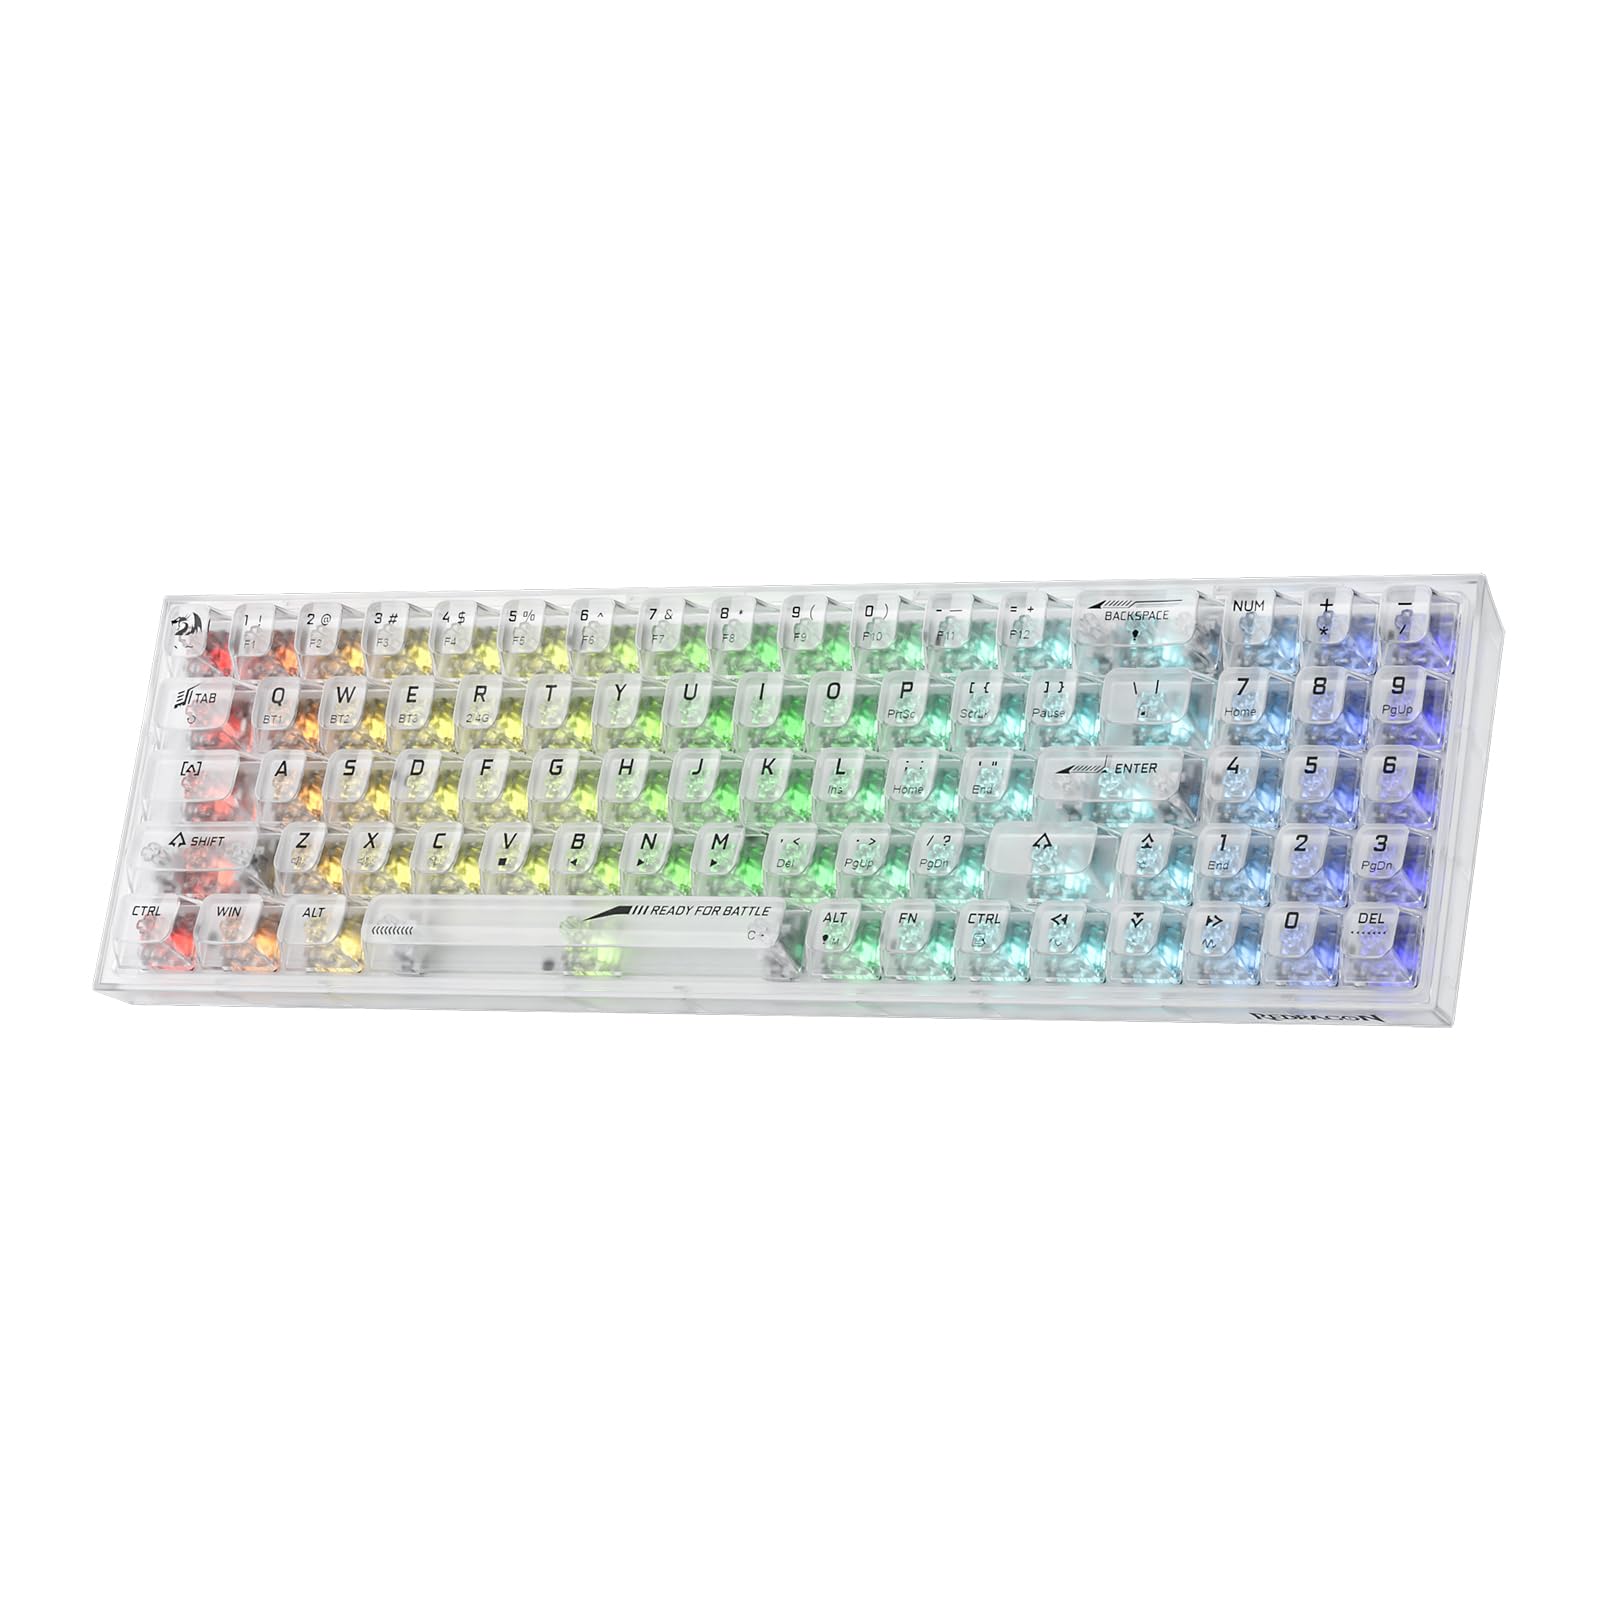 Redragon K628 PRO SE 75% kabellose RGB-Gaming-Tastatur mit 3 Modi, 78 Tasten, vollständig transparente Hot-Swap-kompakte mechanische Tastatur, durchscheinender benutzerdefinierter Schalter